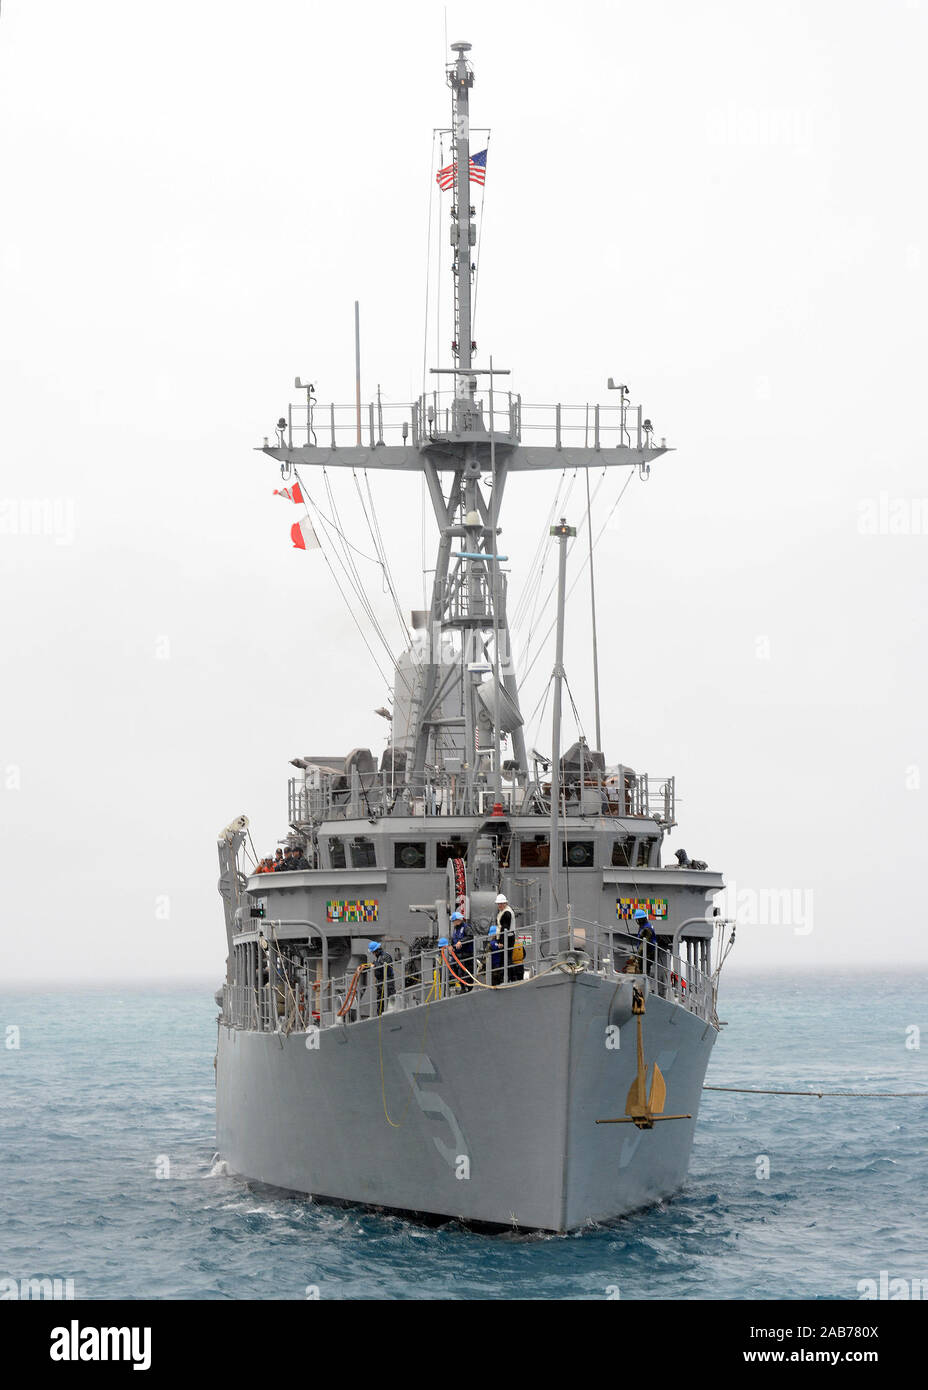 OKINAWA, Japan (Jan. 8, 2013) Die mine Gegenmaßnahmen Schiff USS Guardian (MCM 5) am weißen Strand Marinestützpunkt kommt für einen Hafen besuchen und liefern Nachschub während seiner 2013 Patrouille in den USA 7 Flotte Verantwortungsbereich. Stockfoto